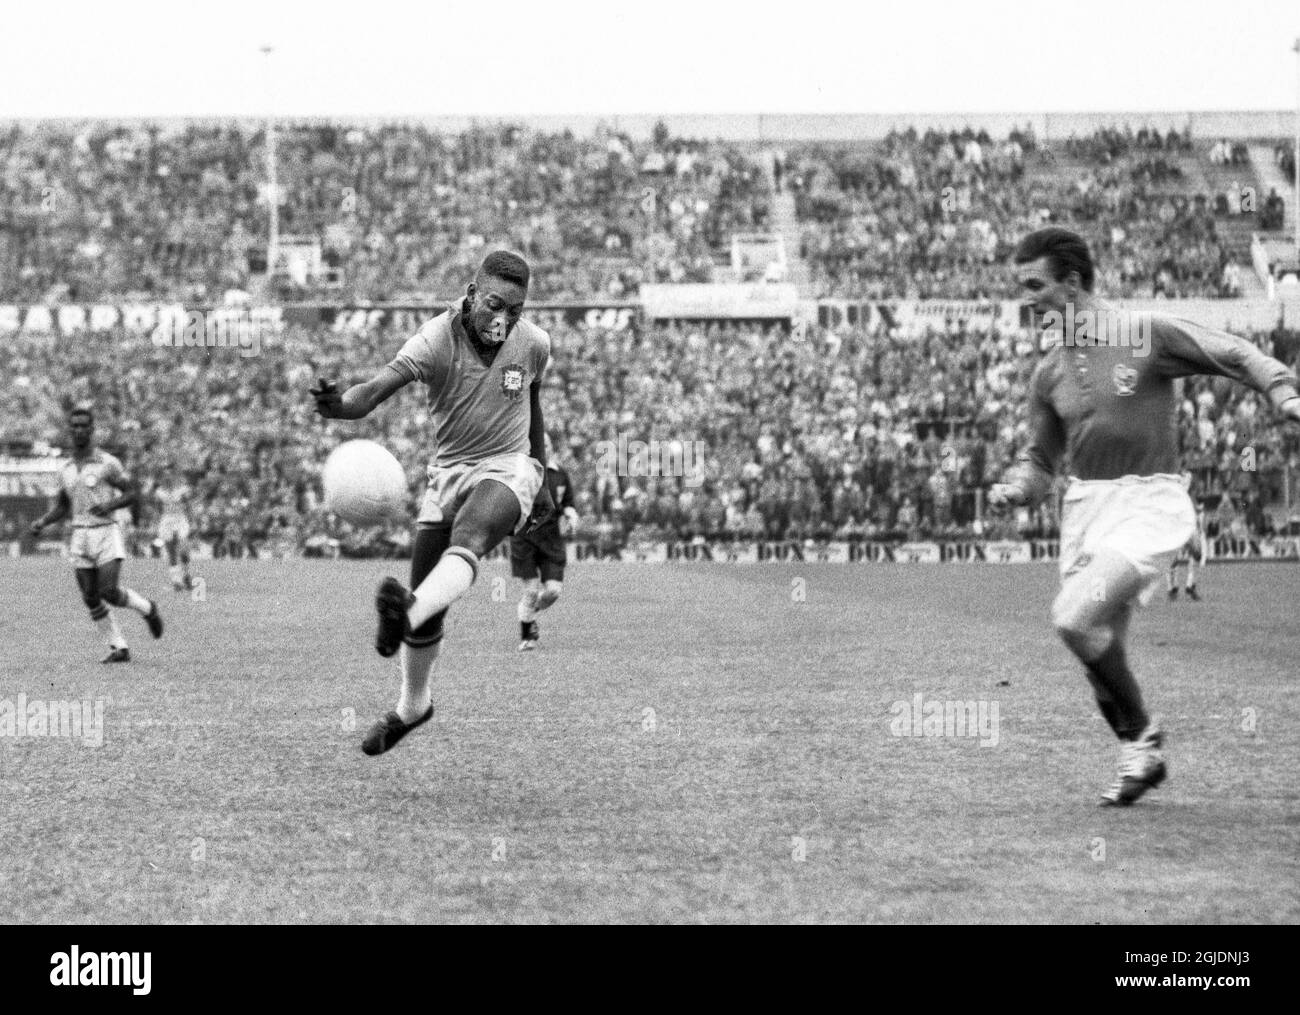 STOCCOLMA 1958-06-24 Pelé del Brasile (L) spara durante la partita di calcio della Coppa del mondo FIFA tra Brasile e Francia allo stadio Rasunda di Stoccolma, Svezia, il 24 giugno 1958. Photo: Prisens Bild / TT / code: 190 Foto Stock